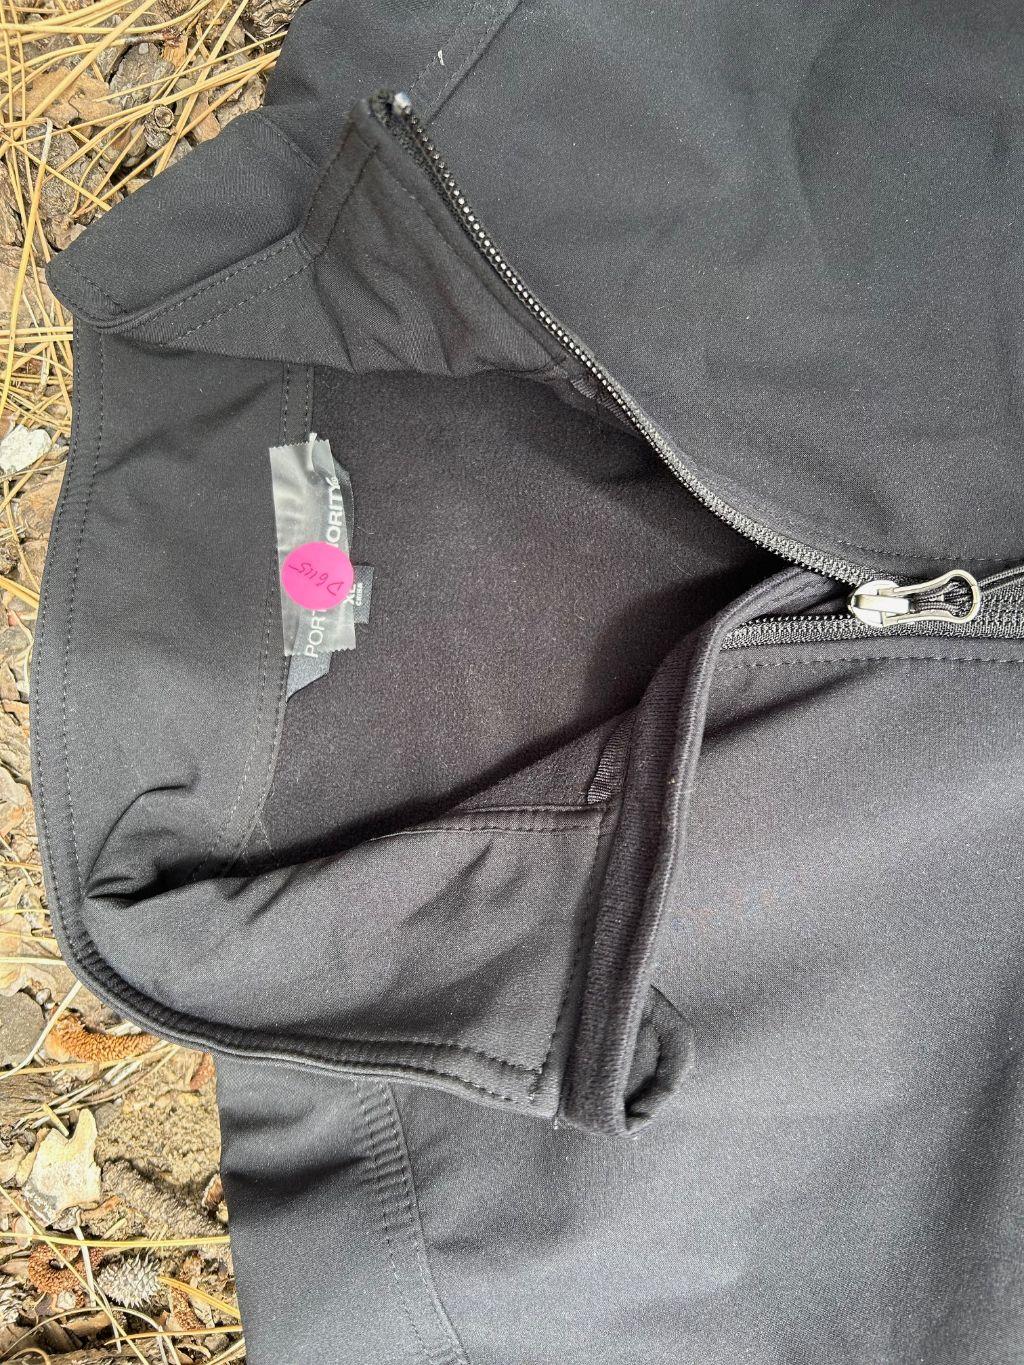 Port Authority Weather Proof Zip up Jacket